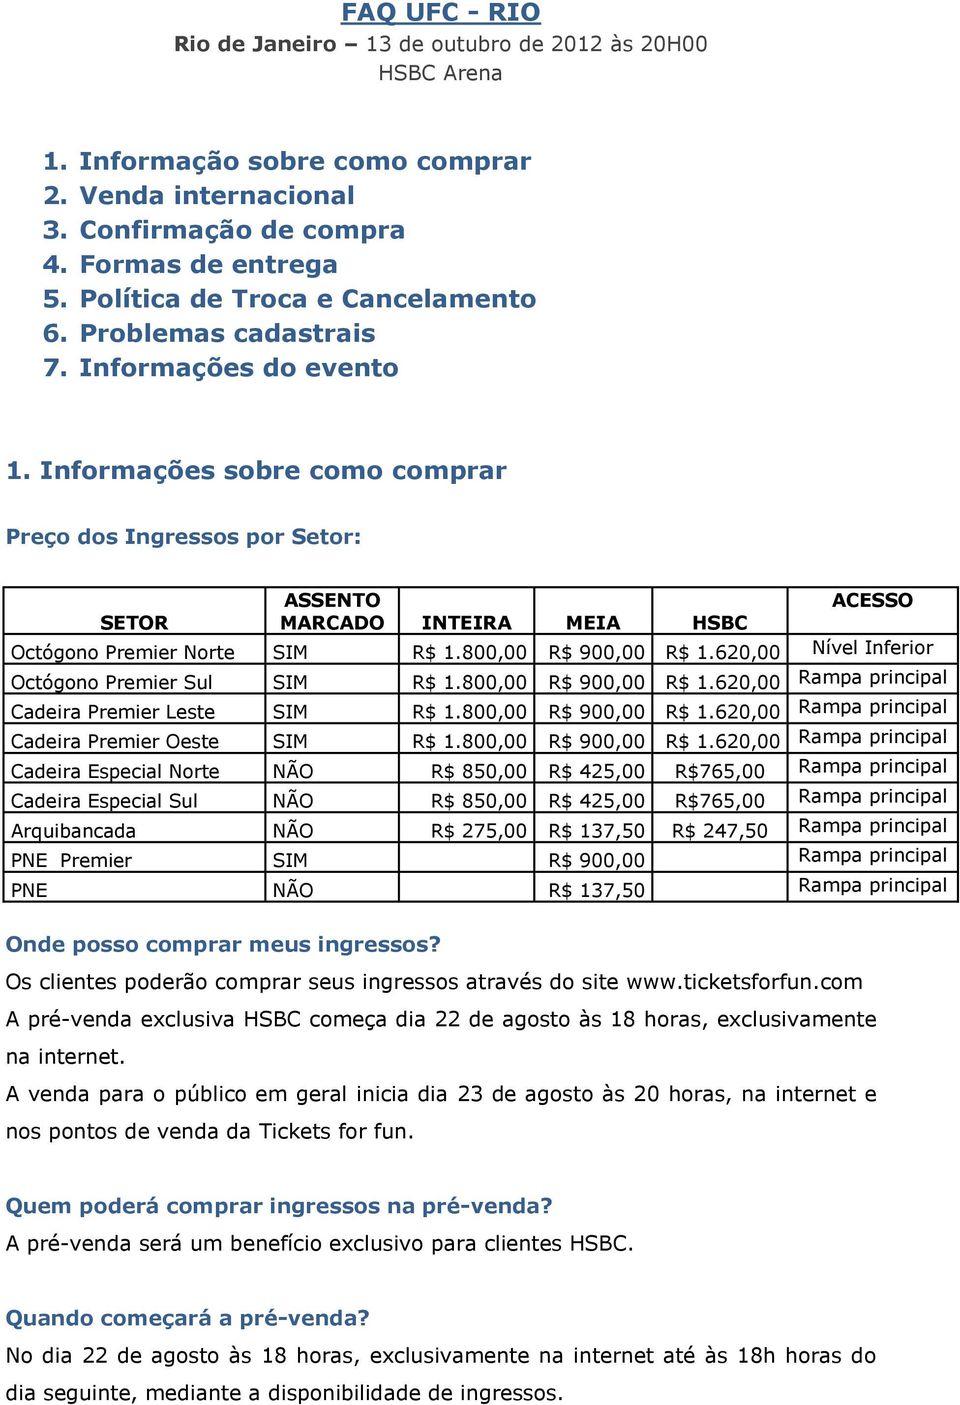 Informações sobre como comprar Preço dos Ingressos por Setor: ASSENTO ACESSO SETOR MARCADO INTEIRA MEIA HSBC Octógono Premier Norte SIM R$ 1.800,00 R$ 900,00 R$ 1.